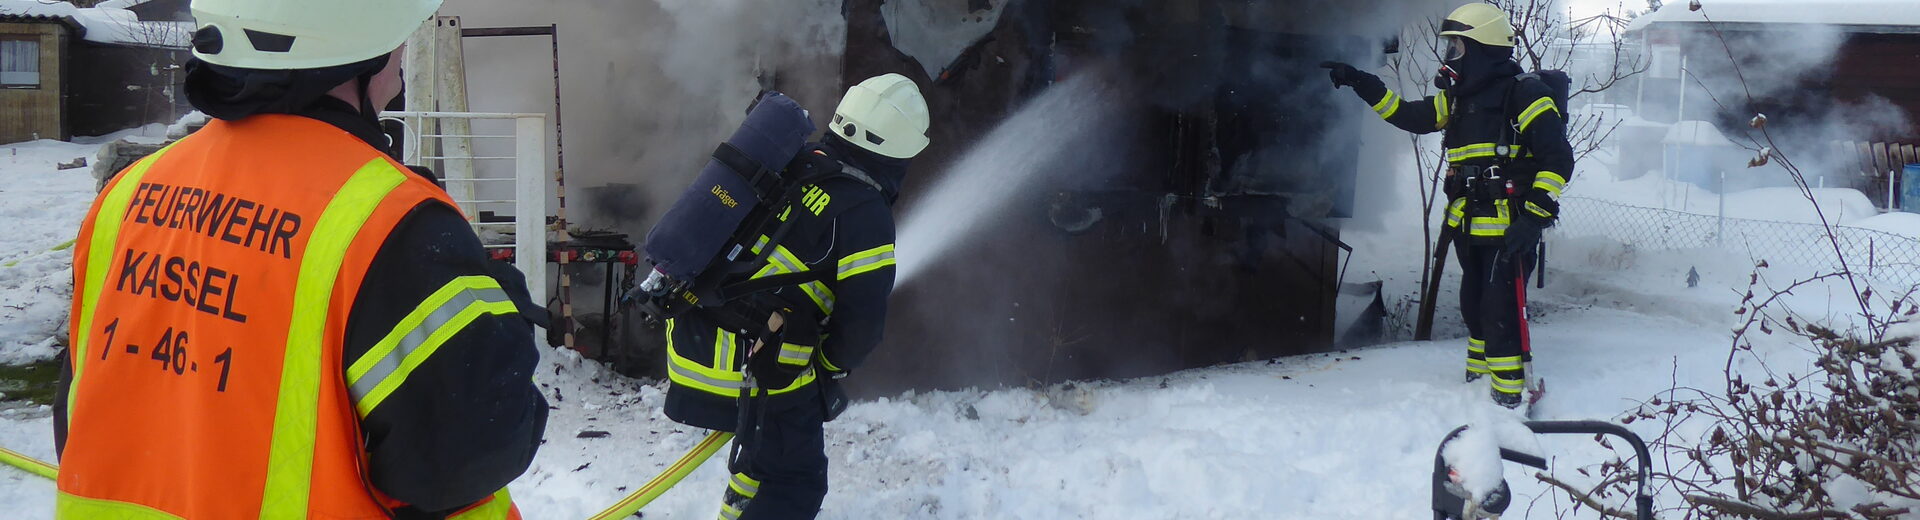 Feuerwehreinsatz im Winter